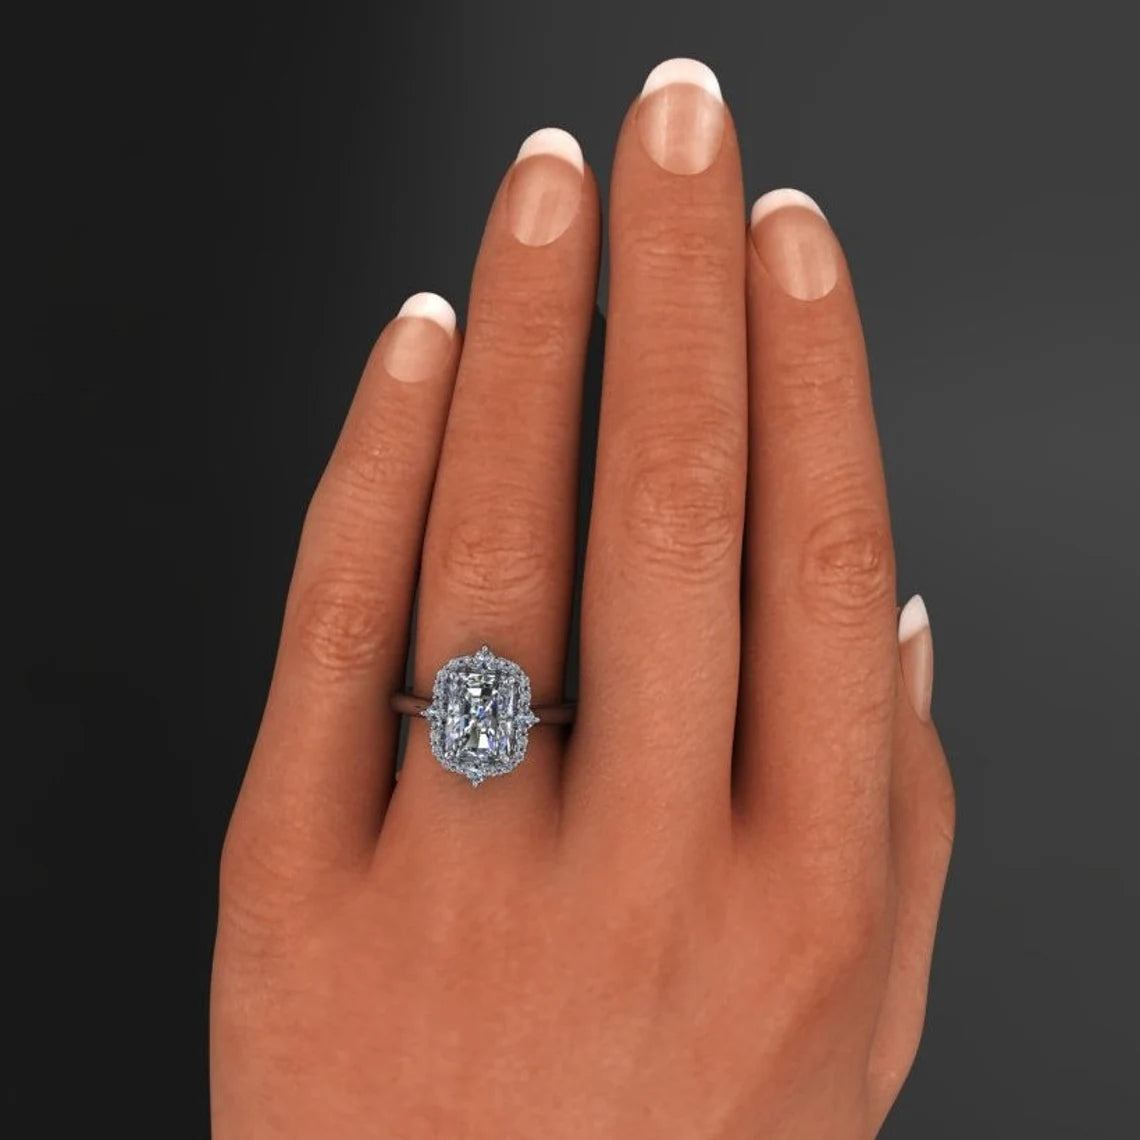 bridget ring - 2 carat moissanite engagement ring, vintage inspired ring, diamond halo - J Hollywood Designs